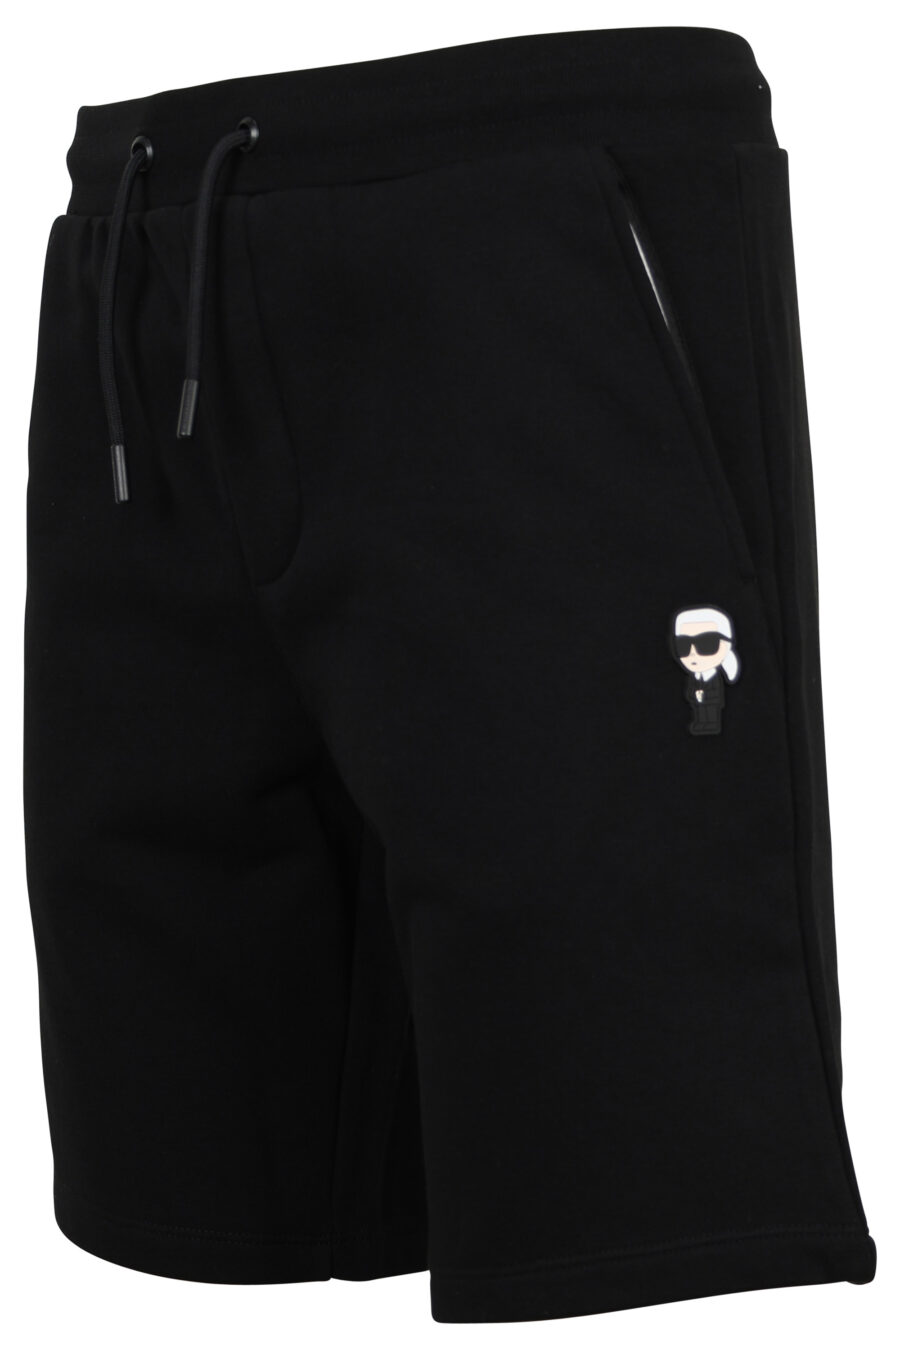 Pantalón de chándal corto negro con minilogo "ikonik" - 4062225691858 1